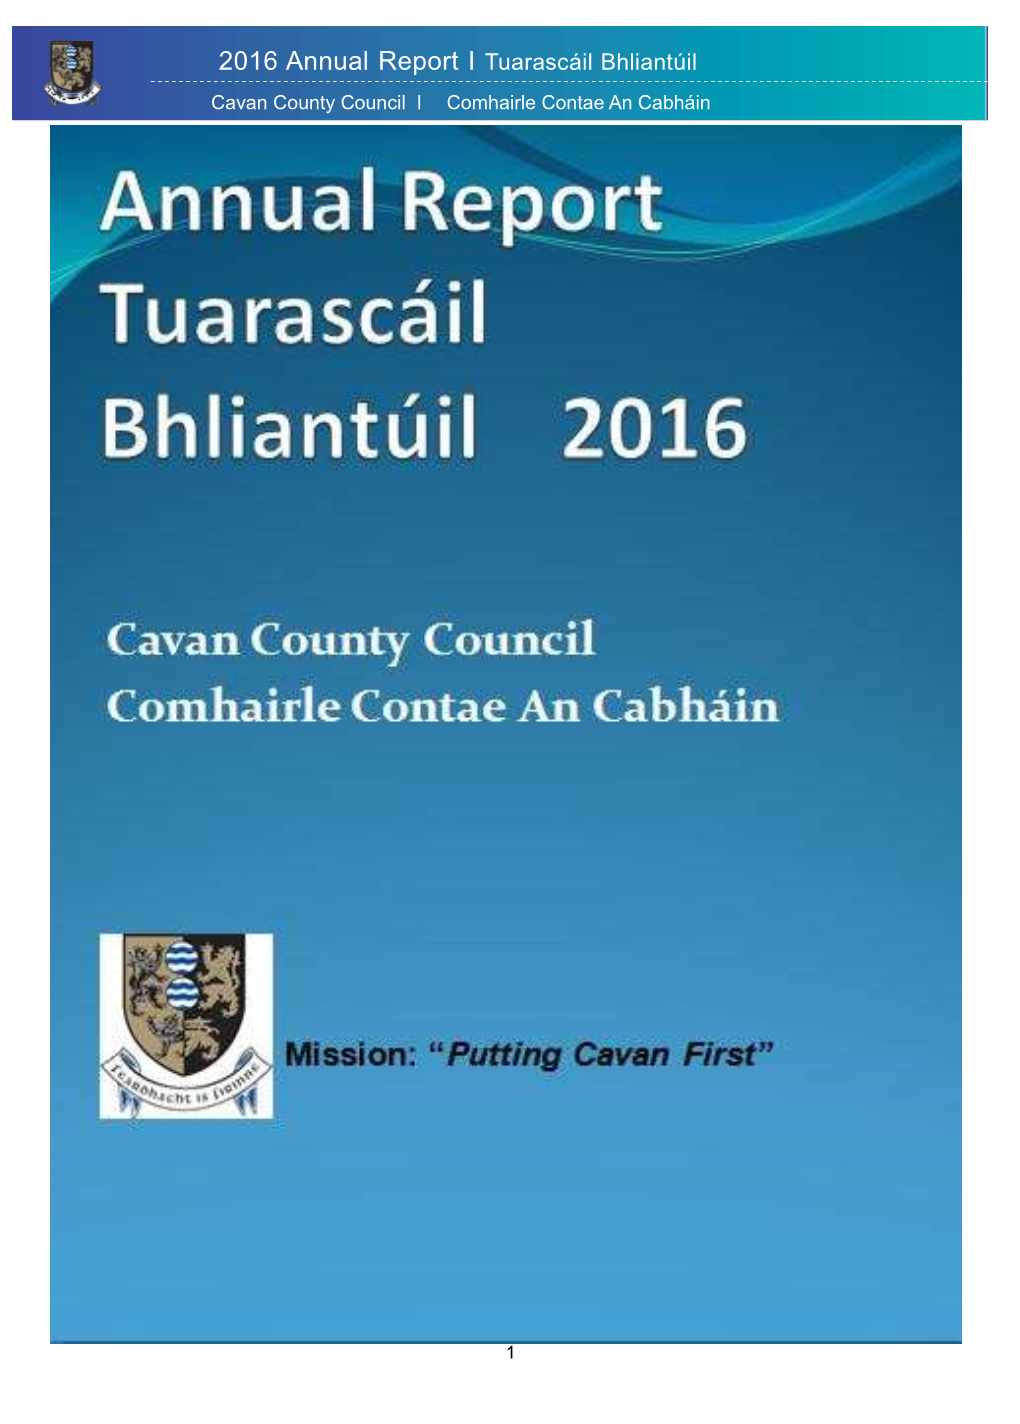 2016 Annual Report I Tuarascáil Bhliantúil Cavan County Council I Comhairle Contae an Cabháin